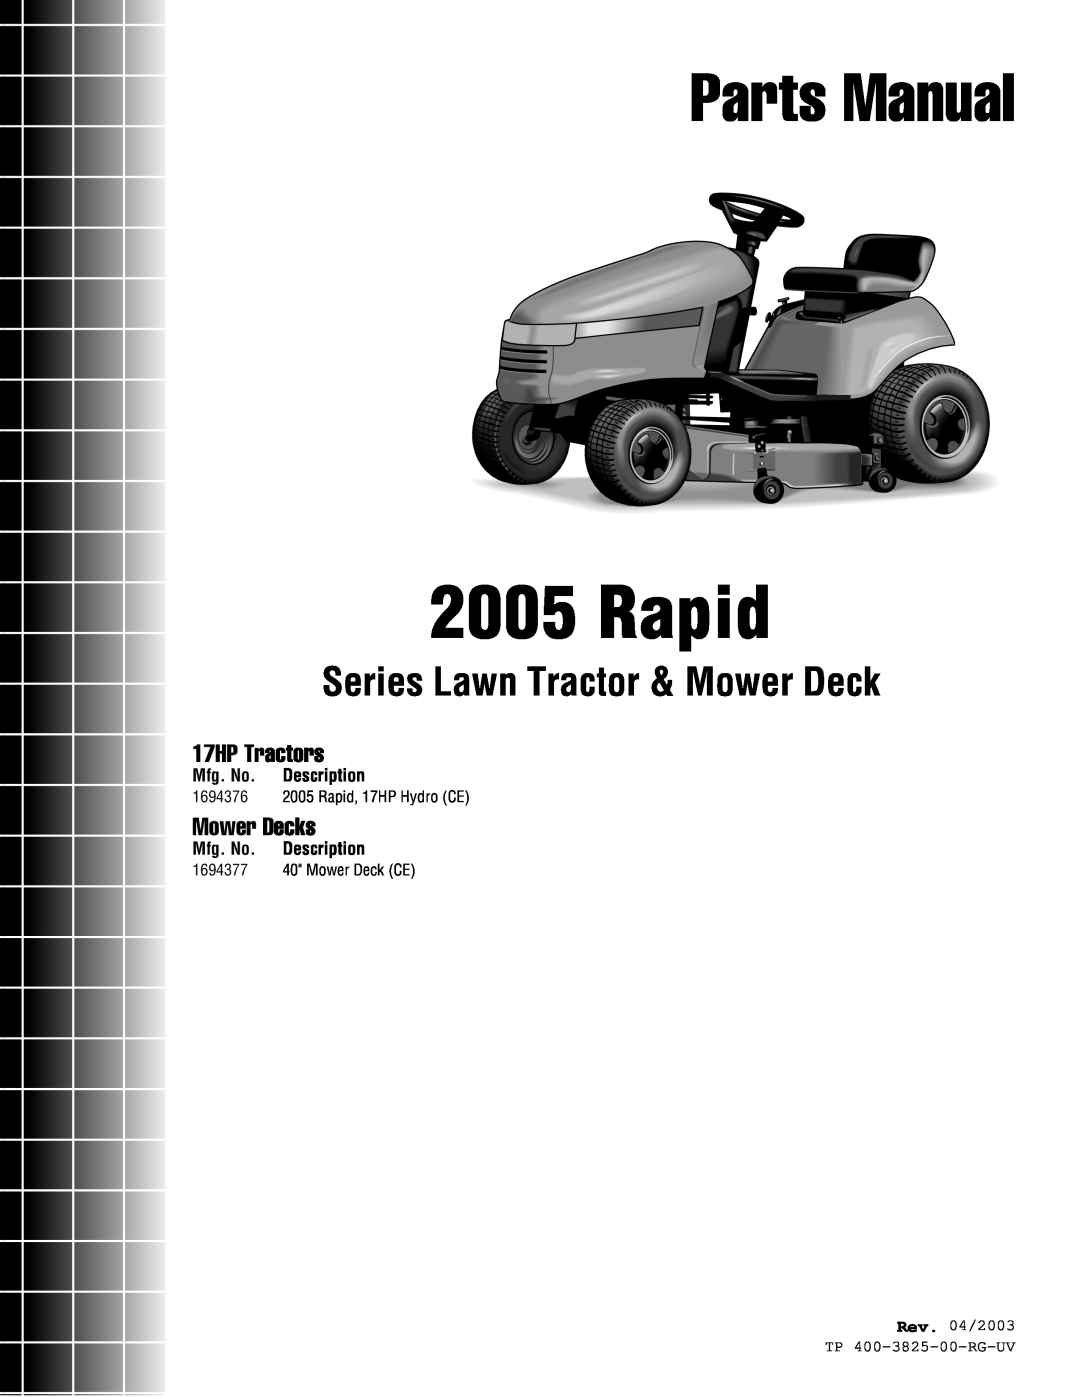 Simplicity 1694376 manual Mfg. No. Description, Rev. 04/2003, TP 400-3825-00-RG-UV, Rapid, Parts Manual, 17HP Tractors 